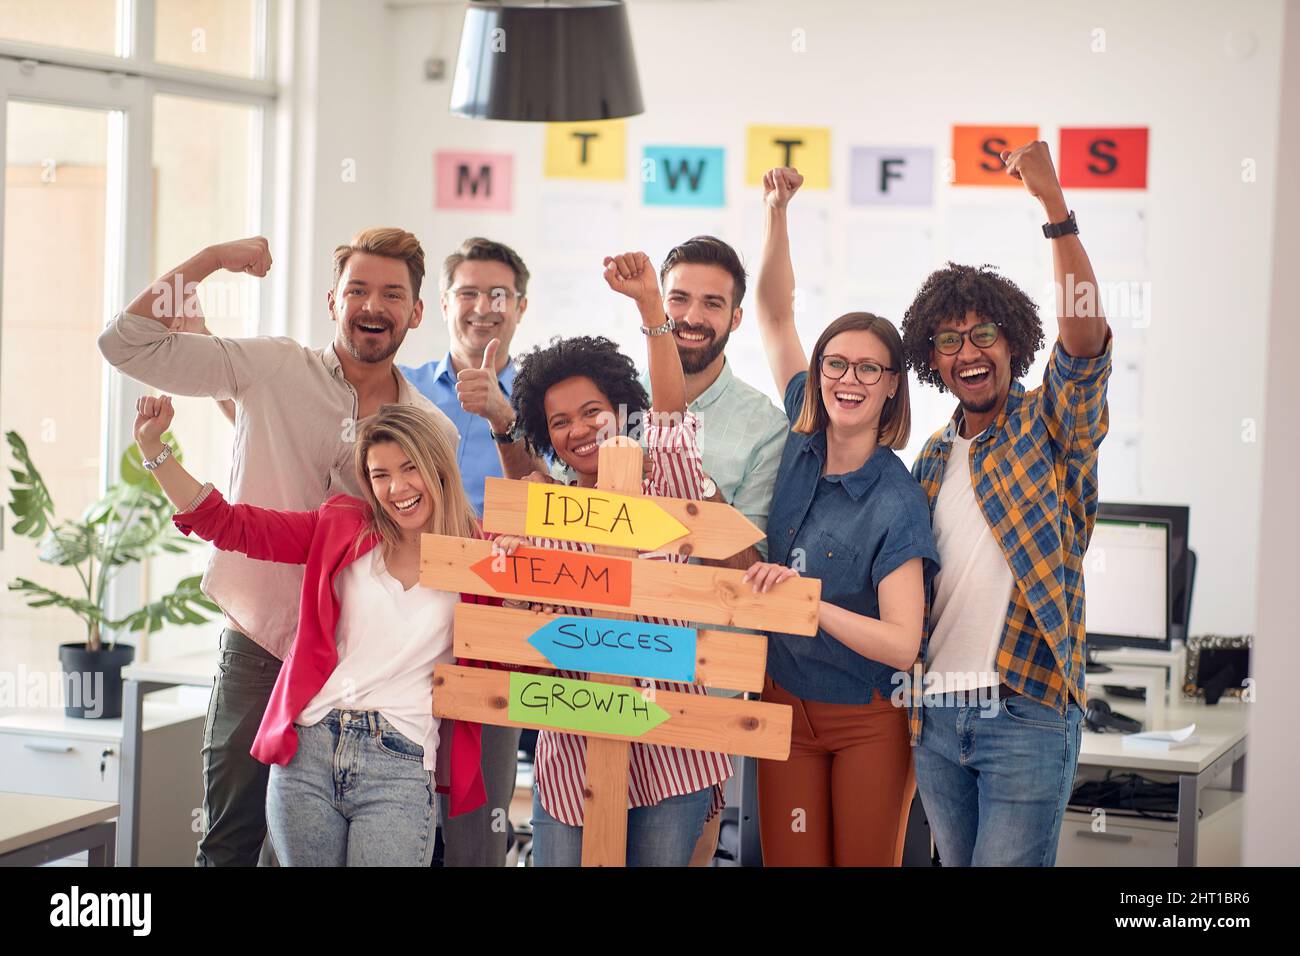 Un groupe de travailleurs de bureau heureux pose pour une photo dans une atmosphère agréable dans le bureau. Employés, travail, bureau Banque D'Images